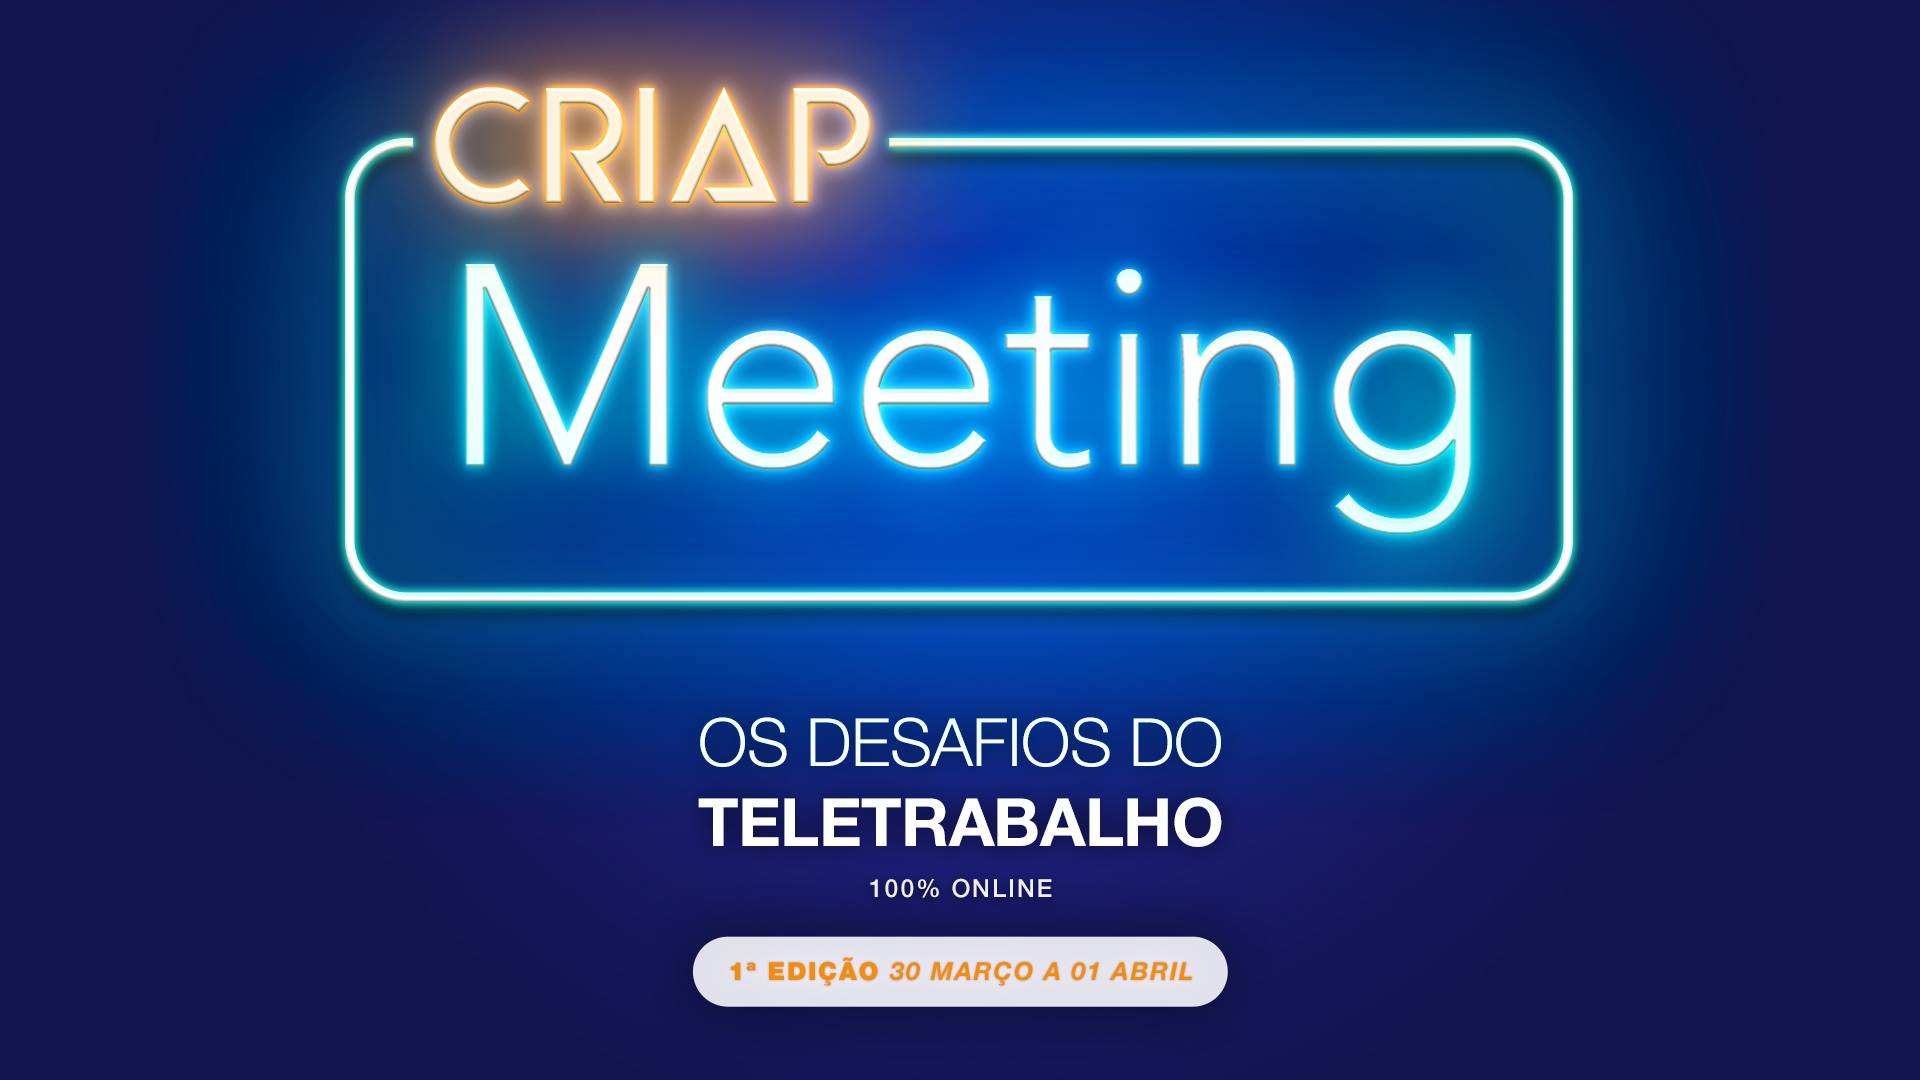 CRIAP Meeting: Os Desafios do Teletrabalho